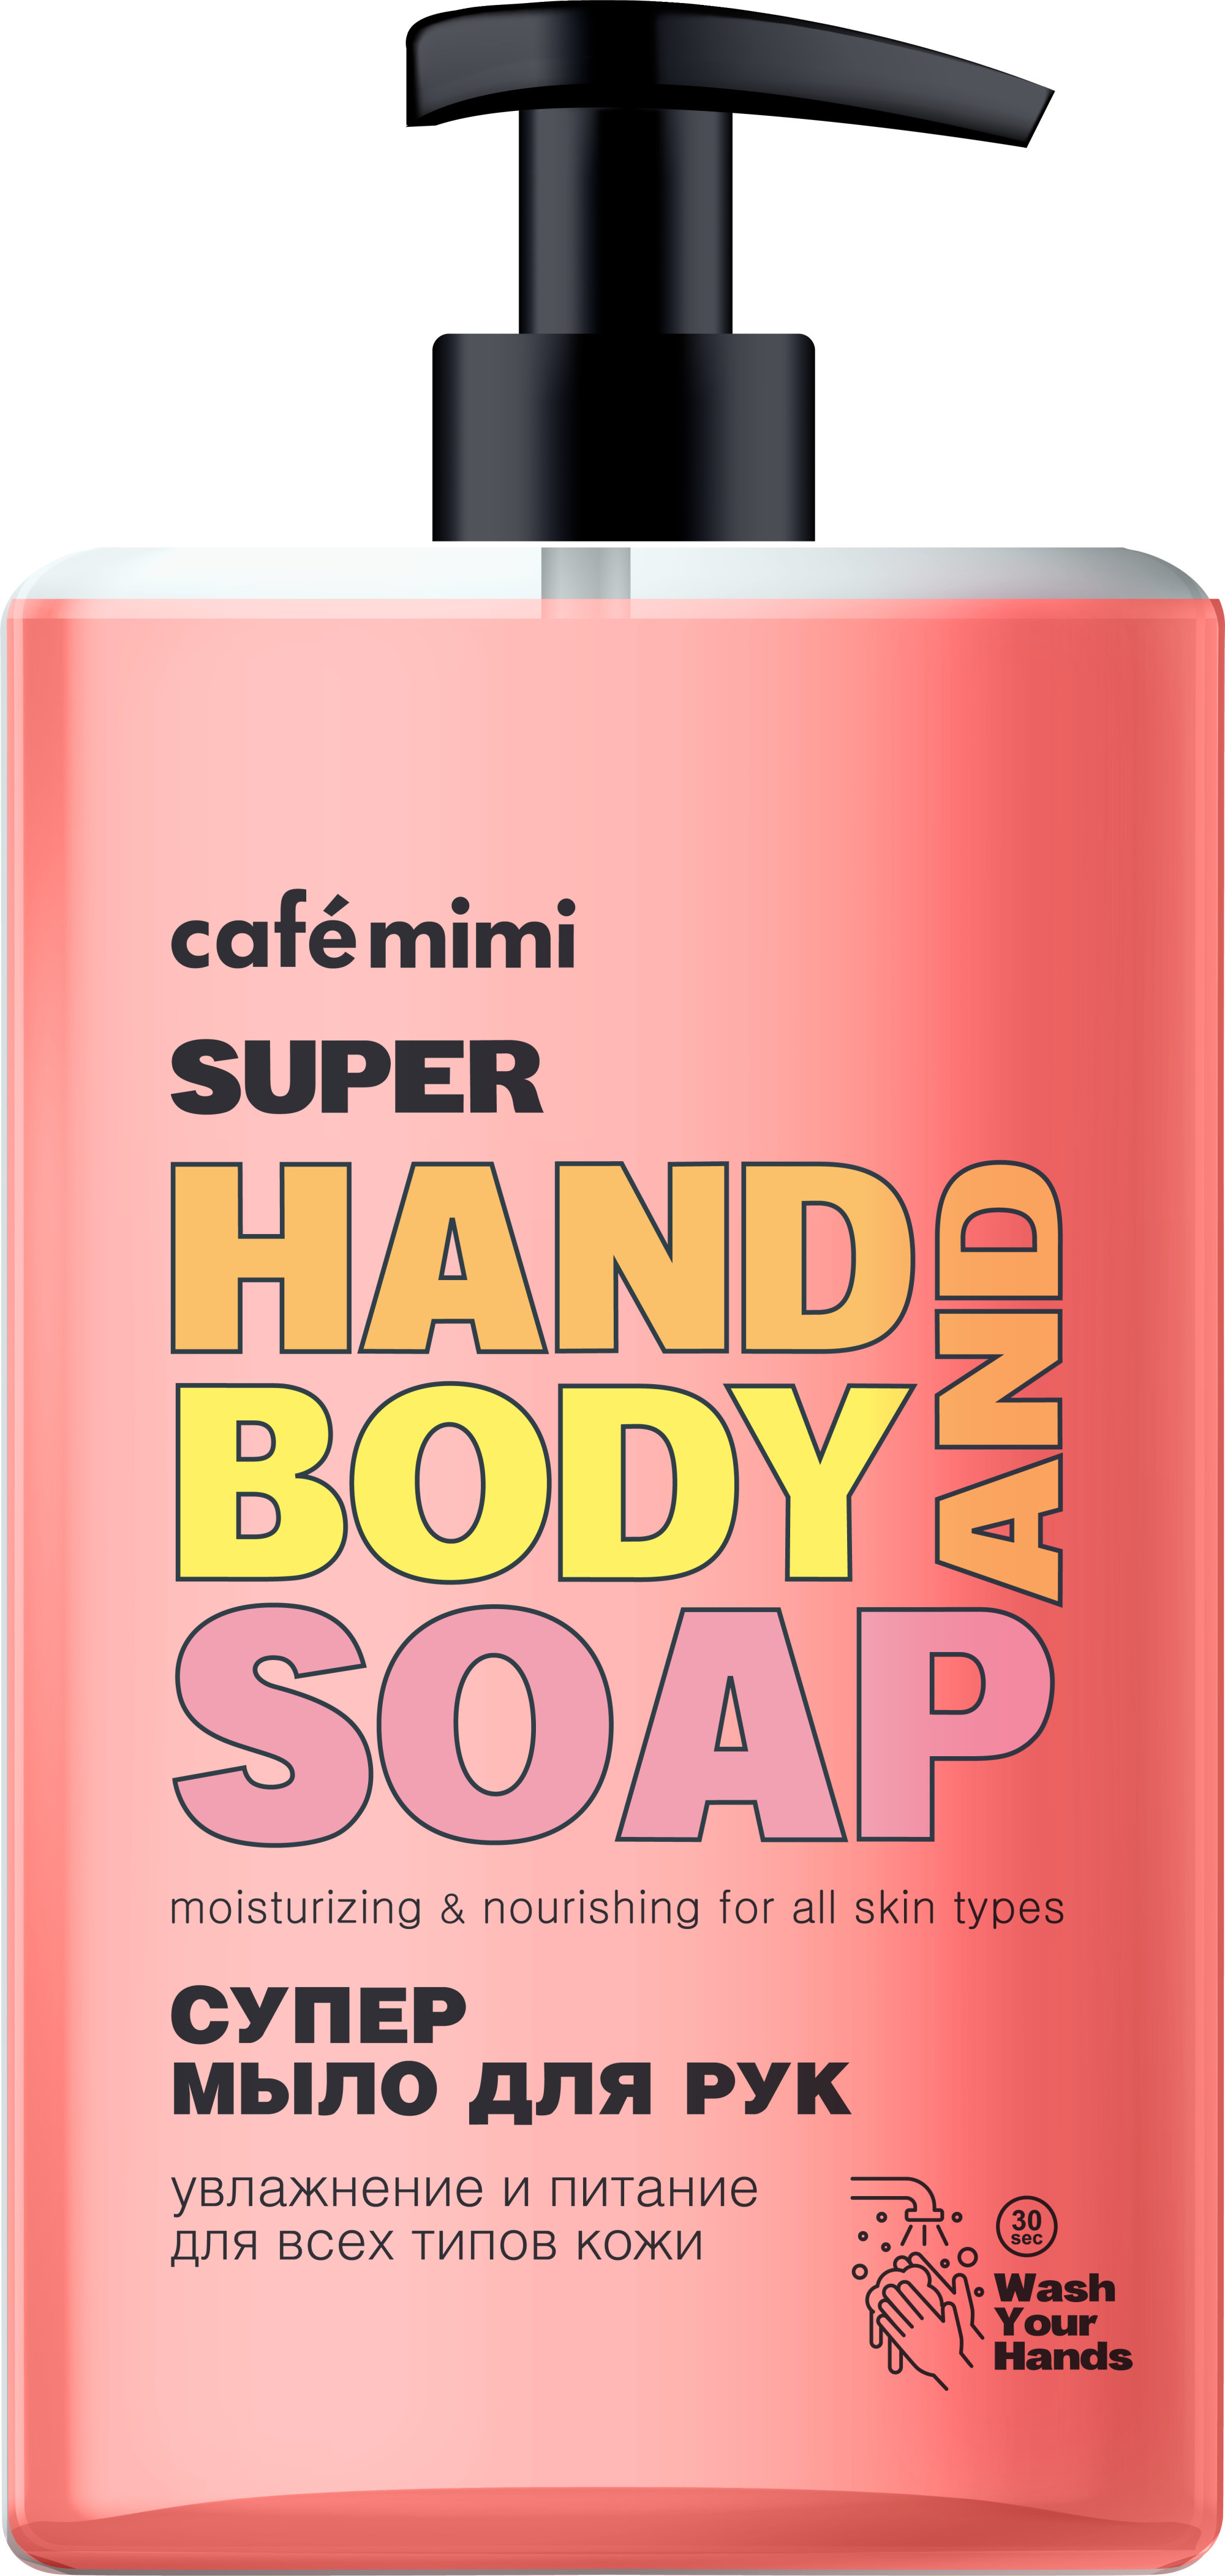 Купить Жидкое мыло для рук, Cafe mimi, Super Food Супер годжи, 450 мл